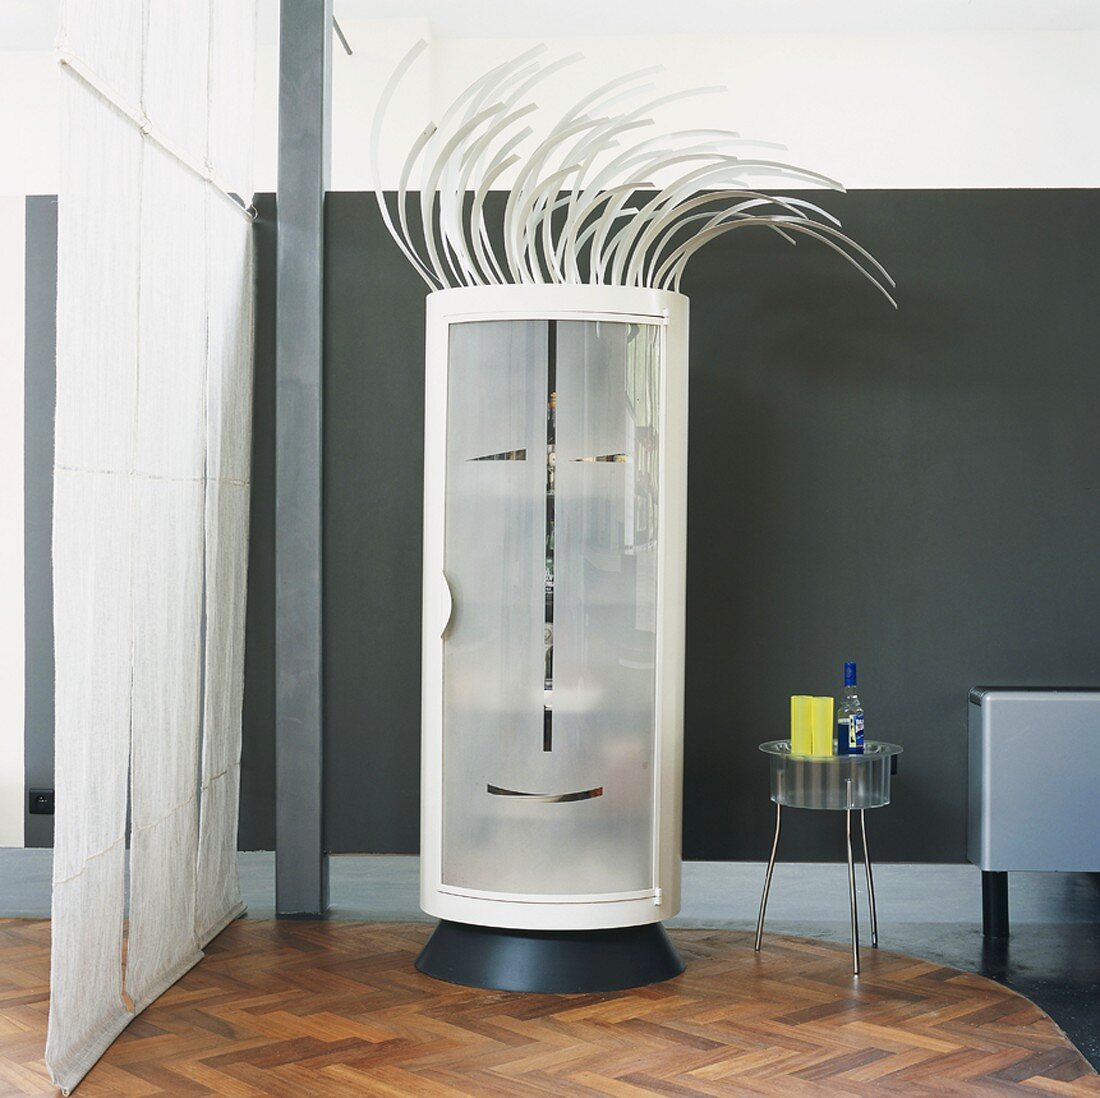 Runder Designer-Schrank mit stilisiertem Gesicht in der Milchglastür und Punkfrisur in Wohnraum mit Loftcharakter